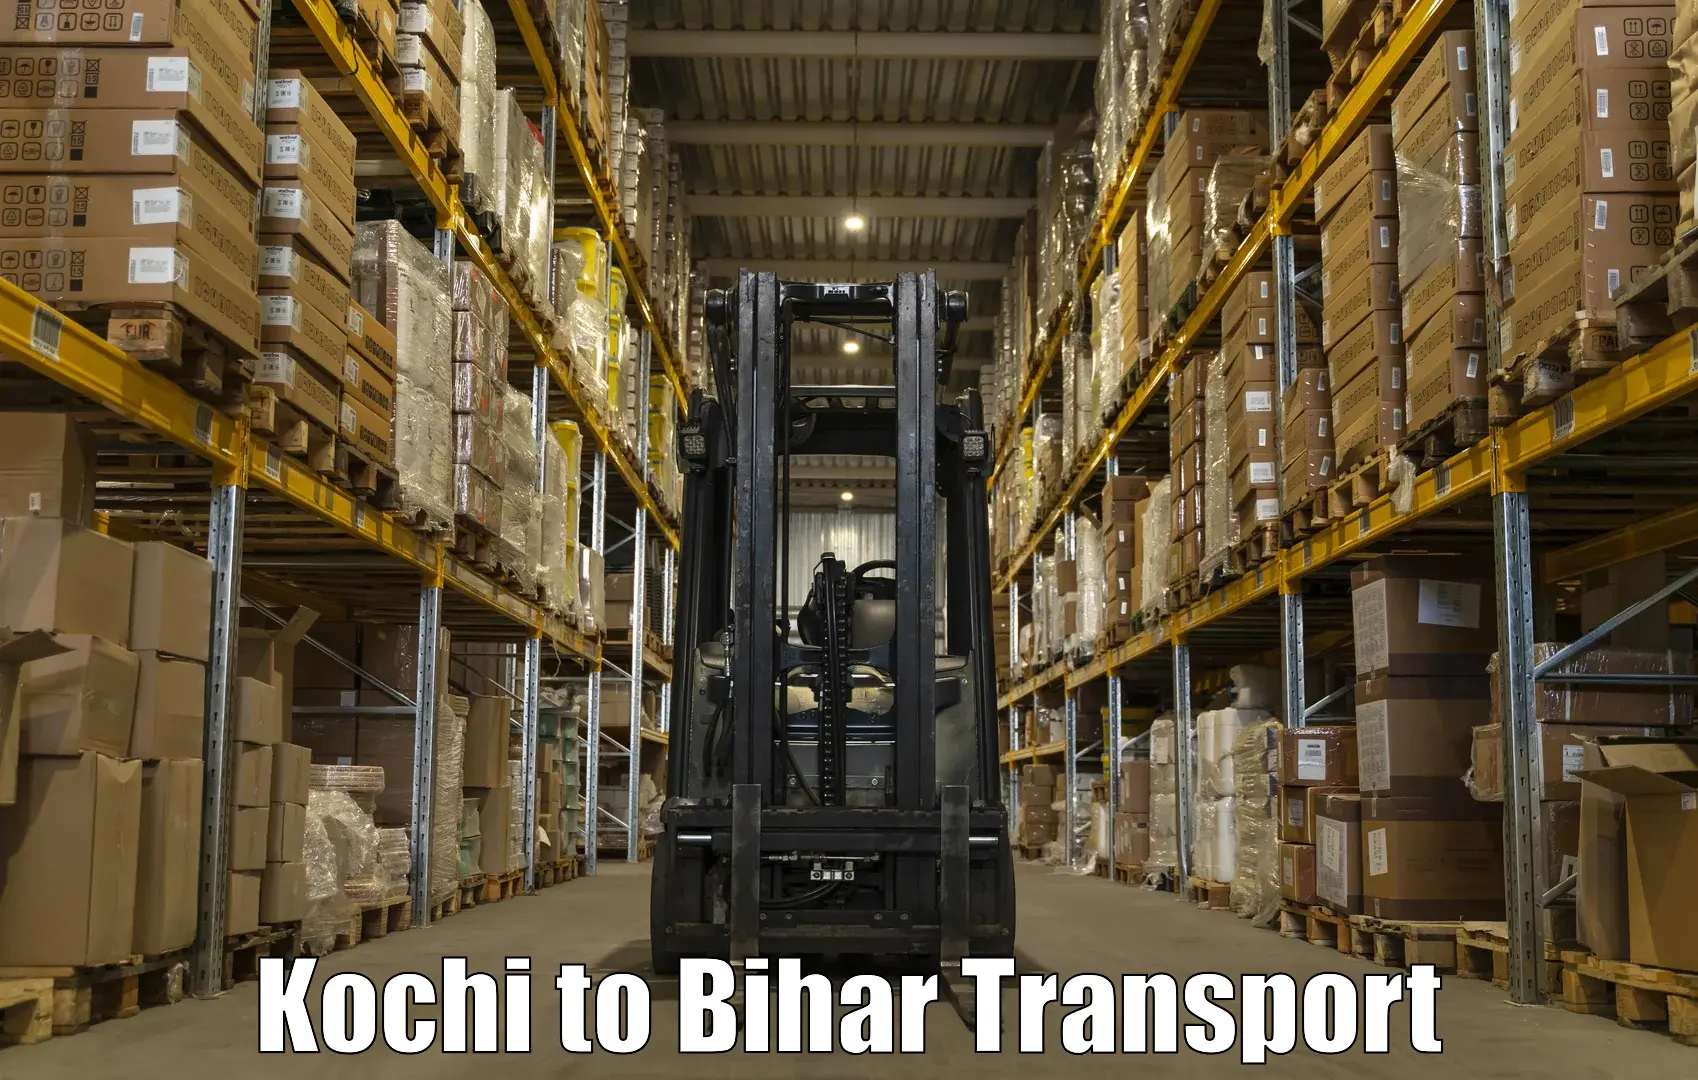 Commercial transport service Kochi to Barhiya